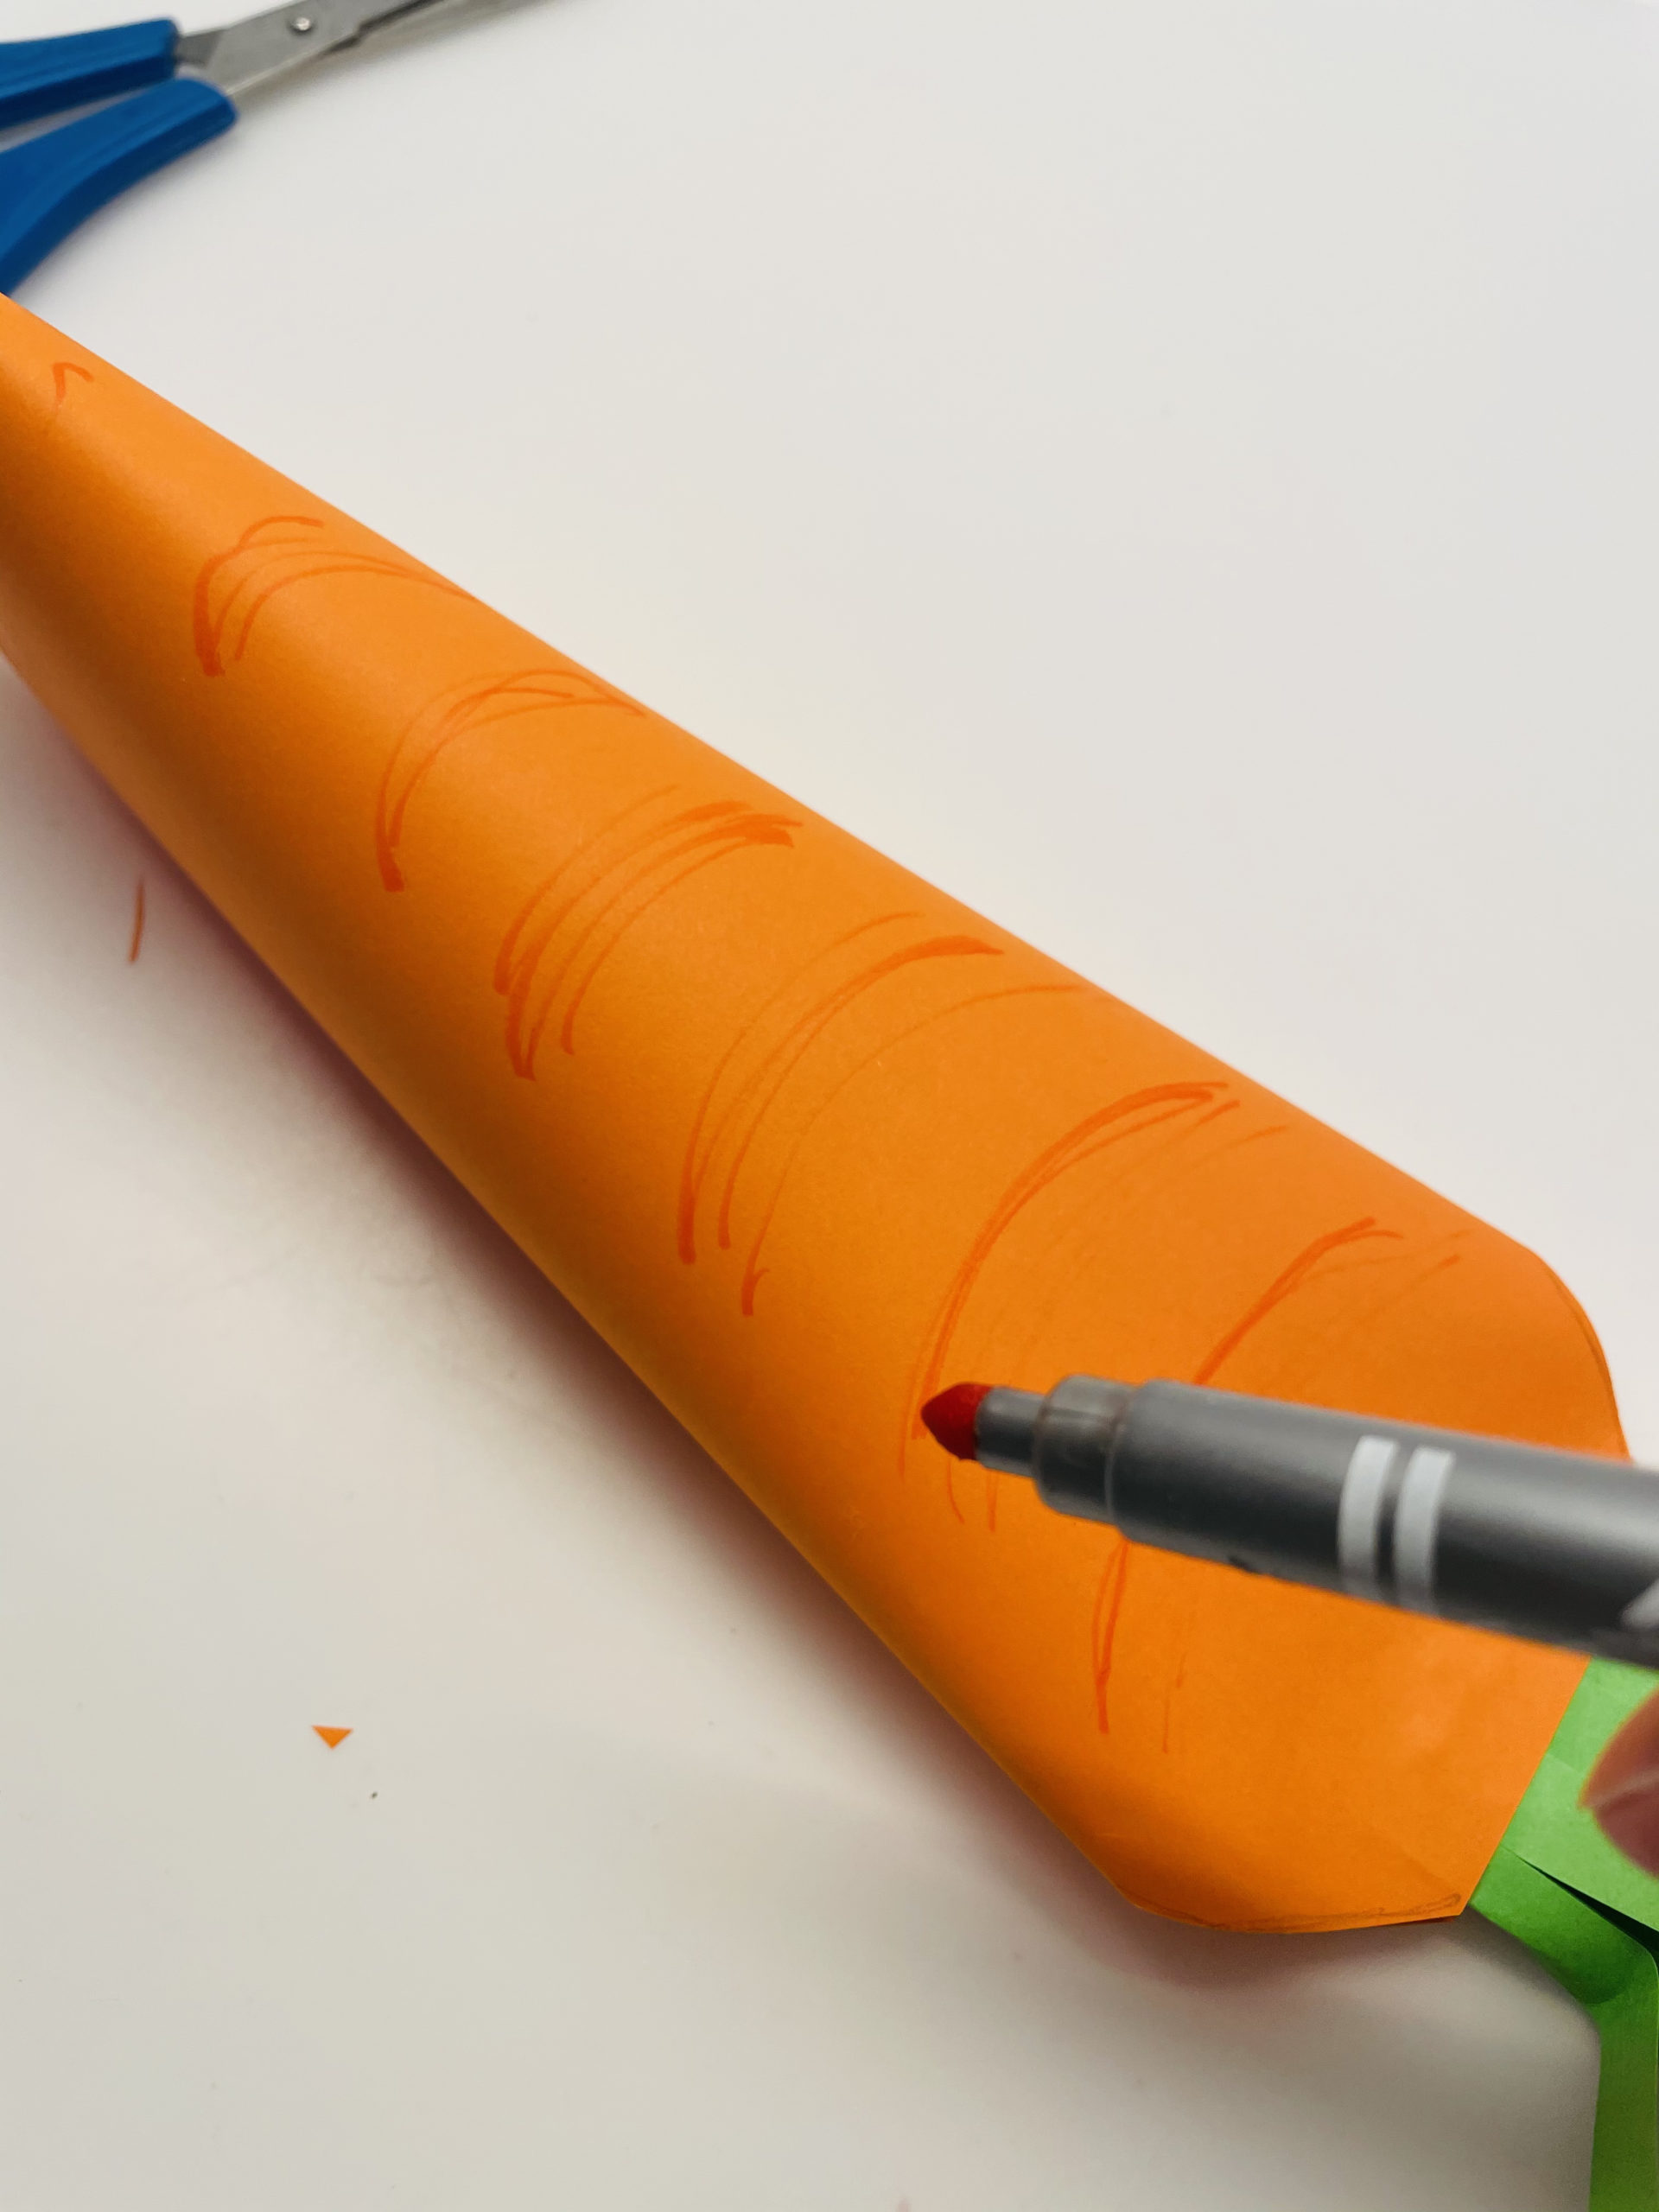 Bild zum Schritt 21 für das Bastel- und DIY-Abenteuer für Kinder: 'Bemalt nun die Karotte mit einem orangen Stift, so wirkt...'